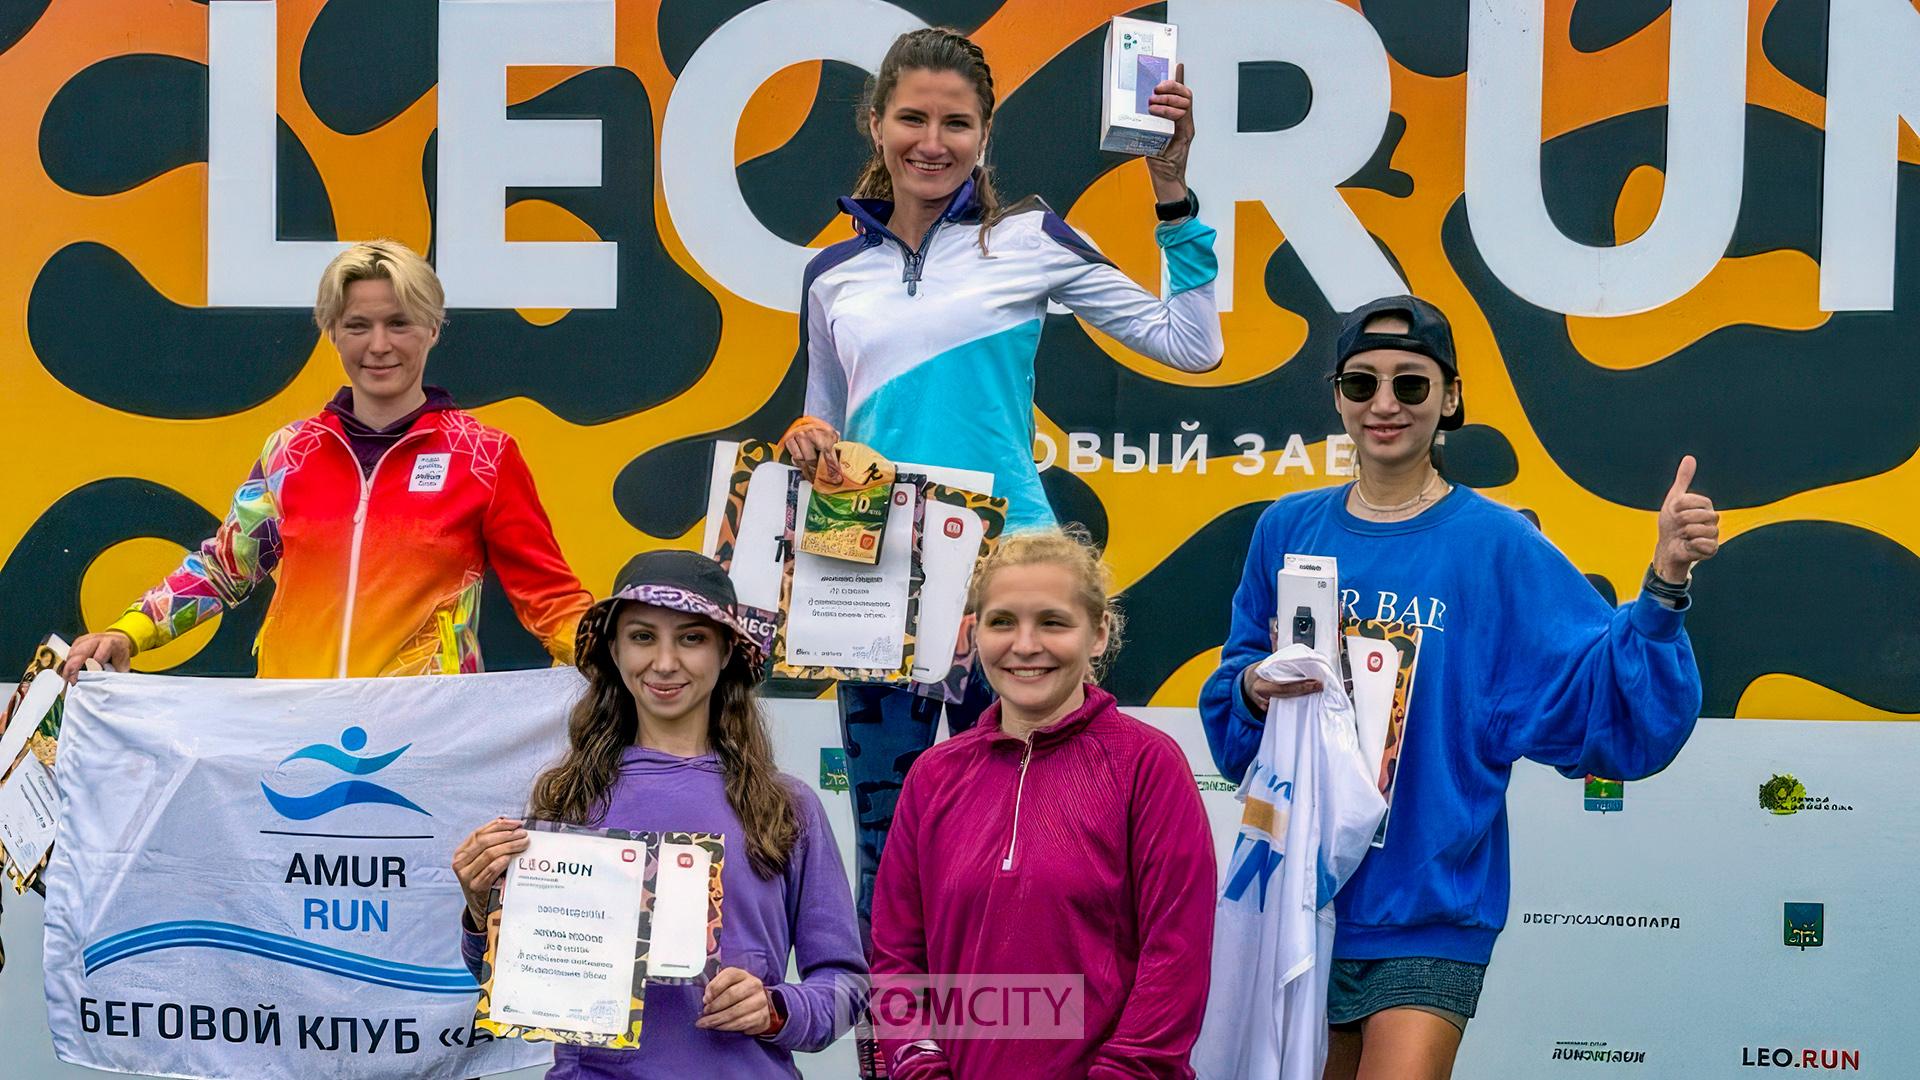 Комсомольчанка стала победительницей «леопардового забега» в Приморье